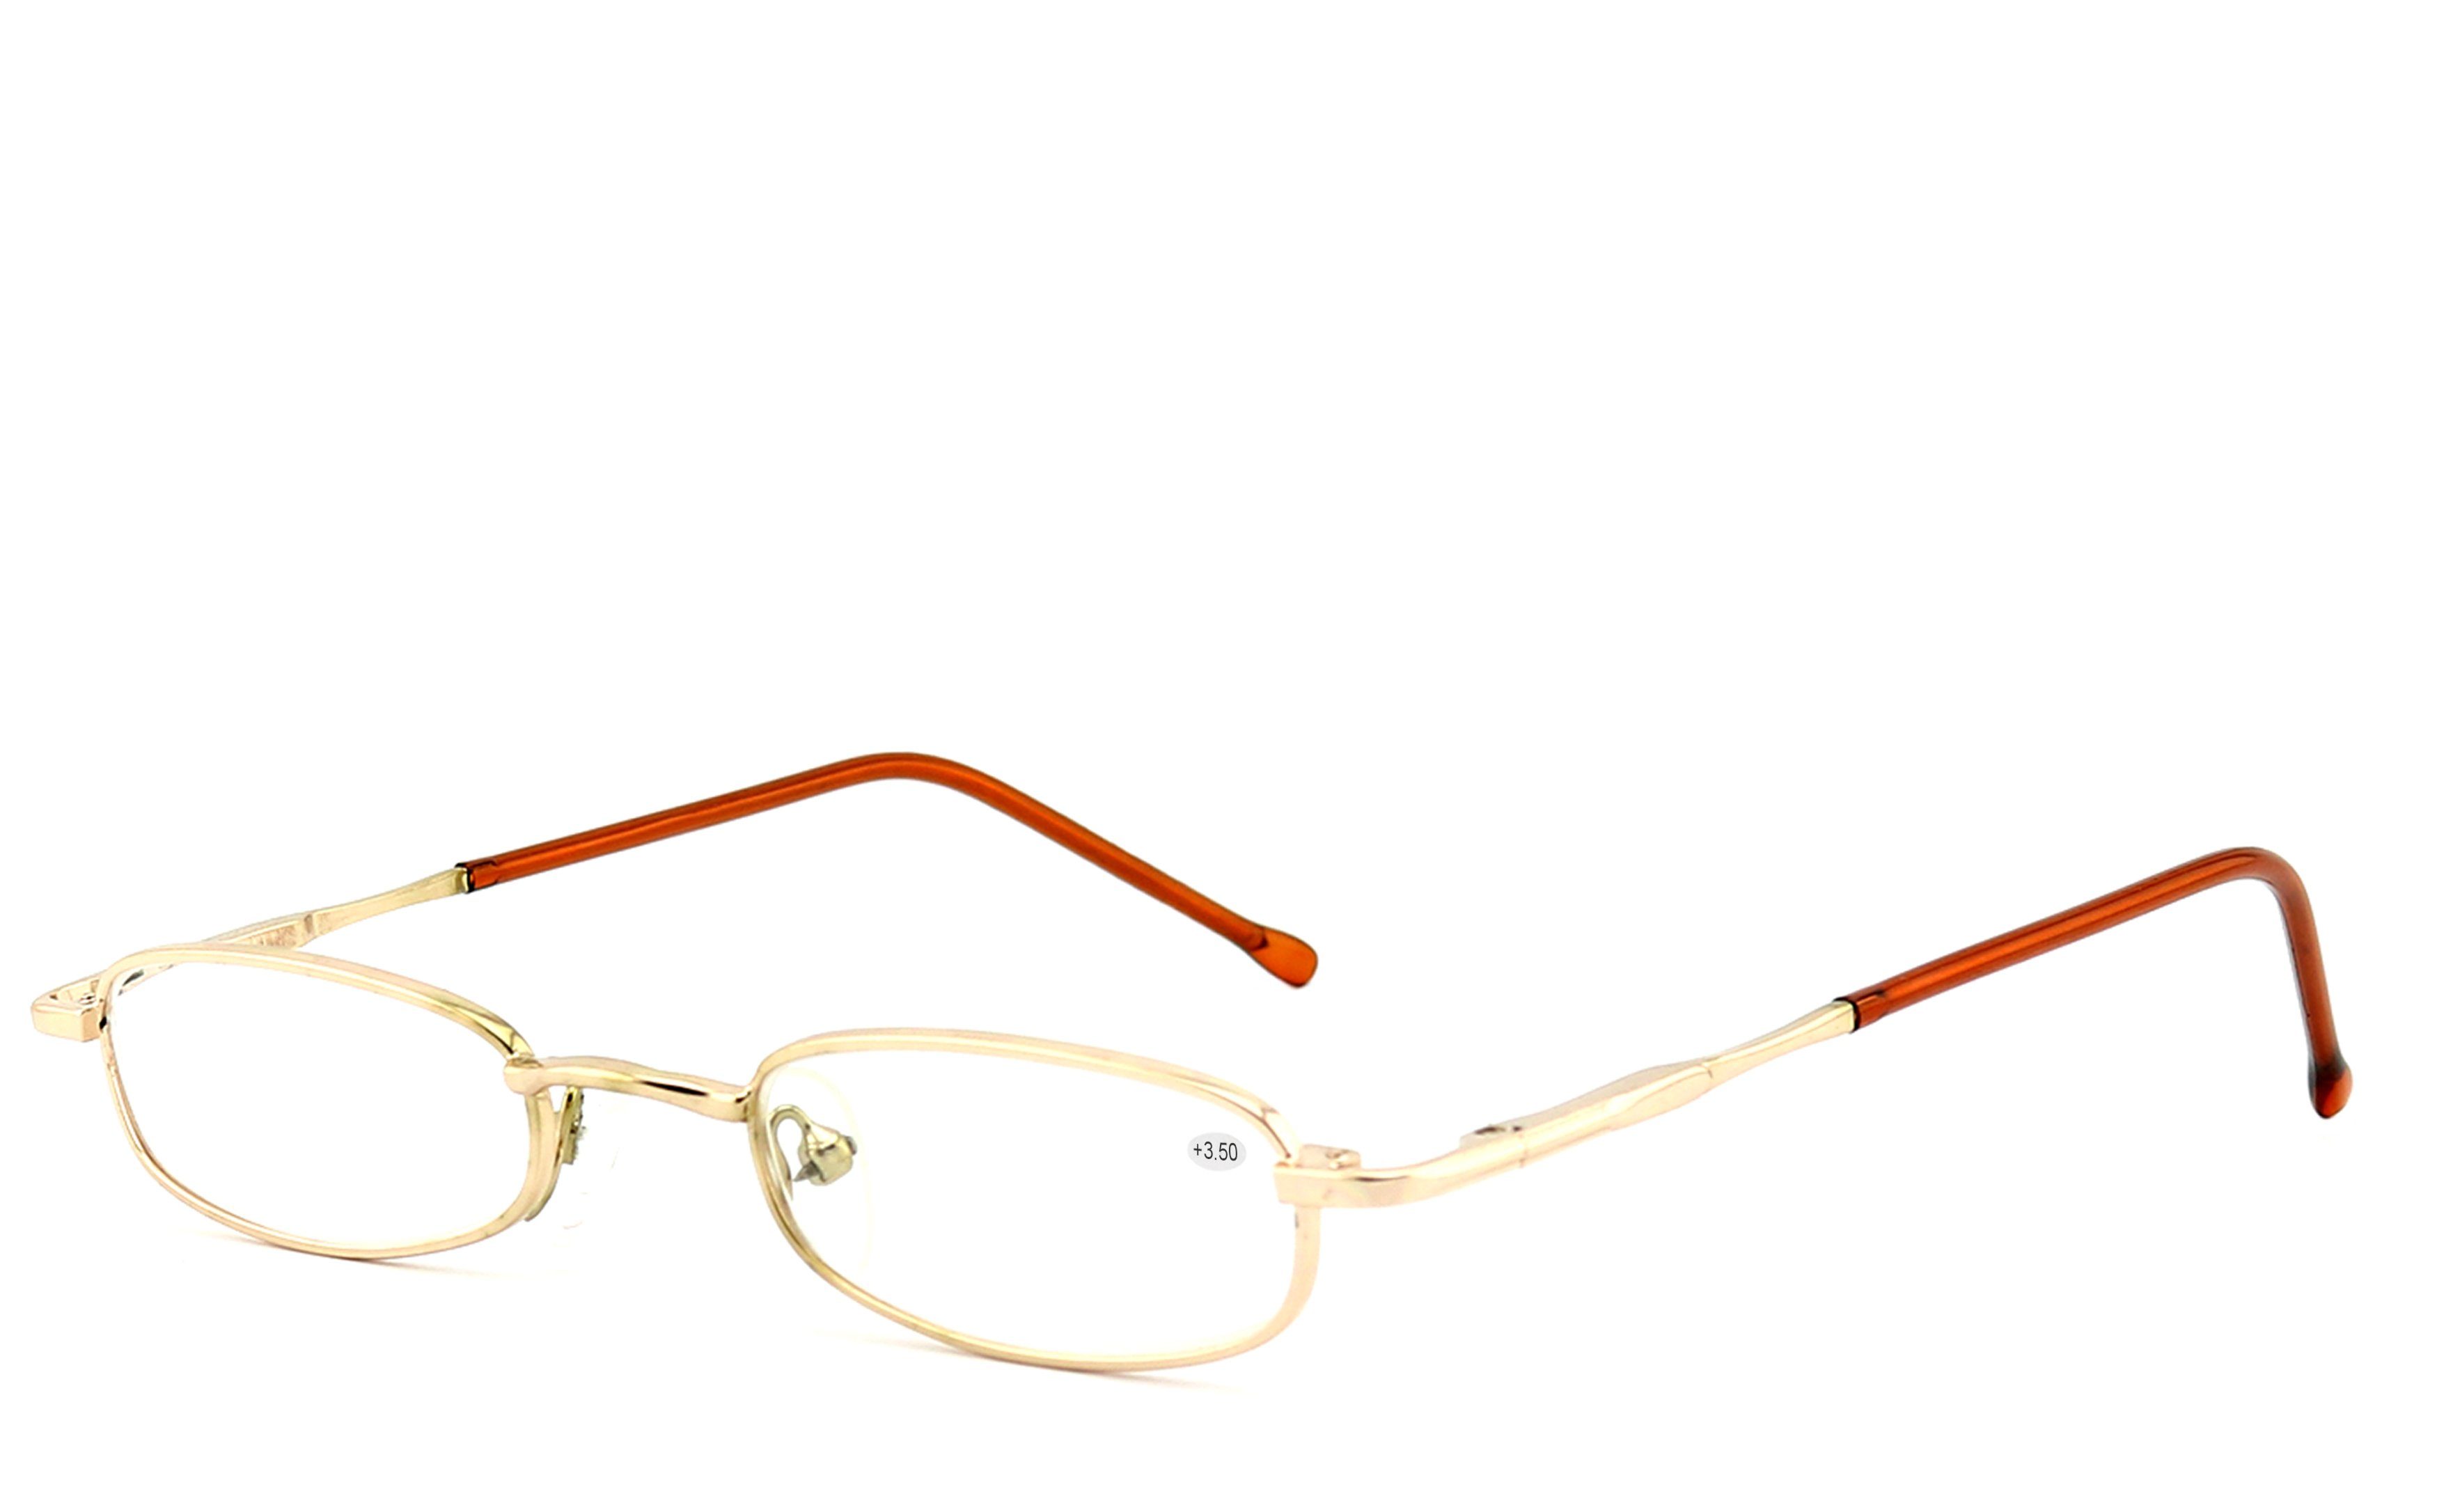 EYESTUFF Lesebrille Lesebrille Flex-Scharnieren hochwertigen Brillenbügel gold, mit